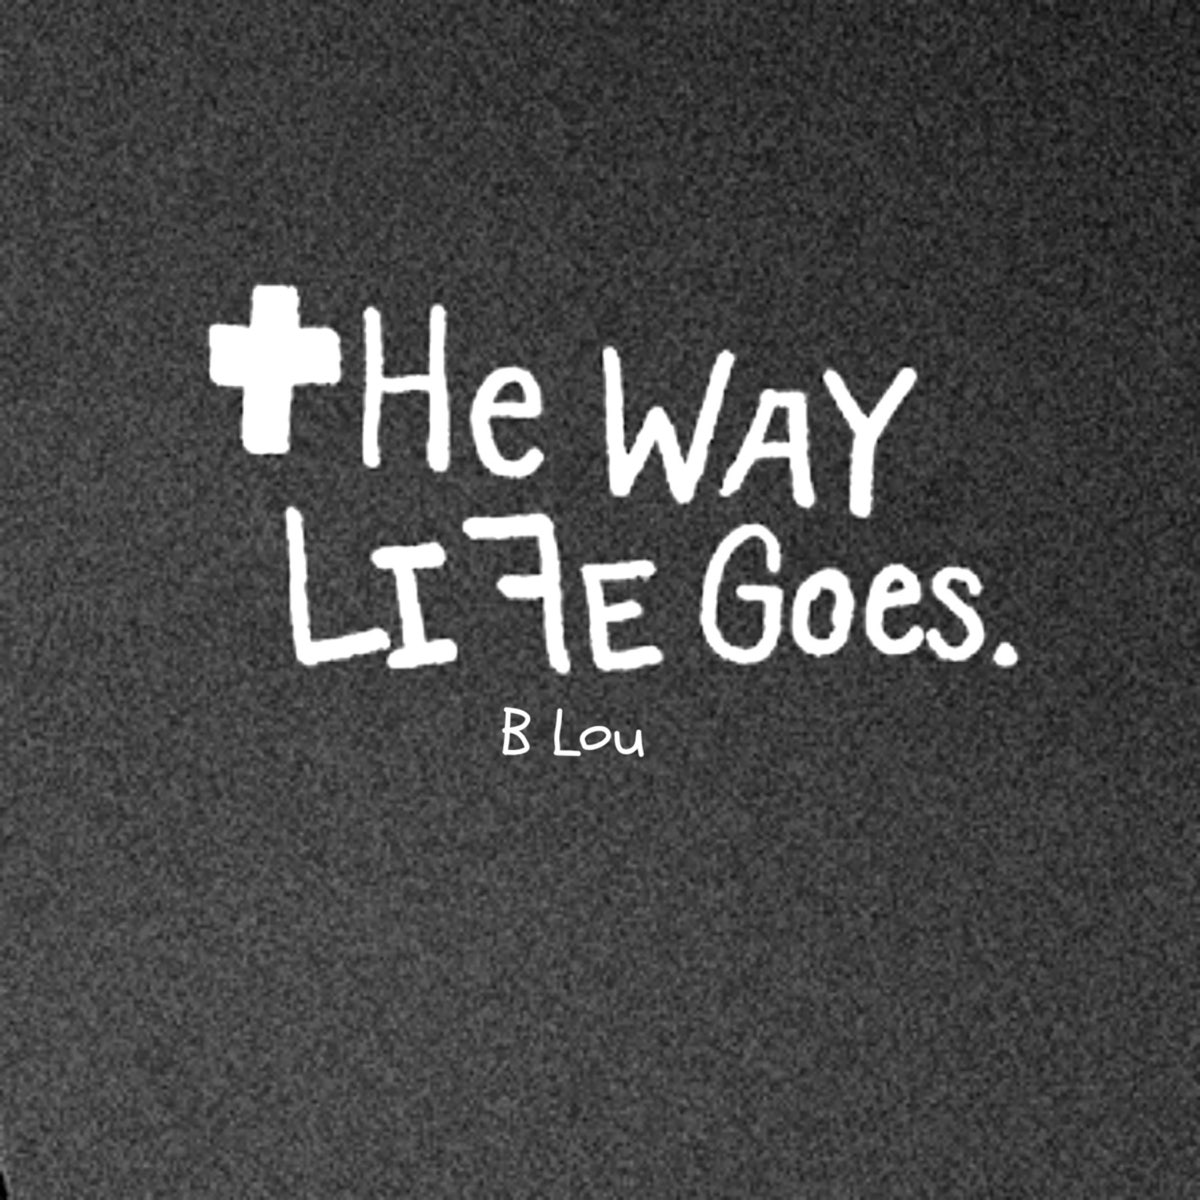 They way life goes. The way Life goes. Life the way песня. Ways of Life. The way Life goes! X Landside.